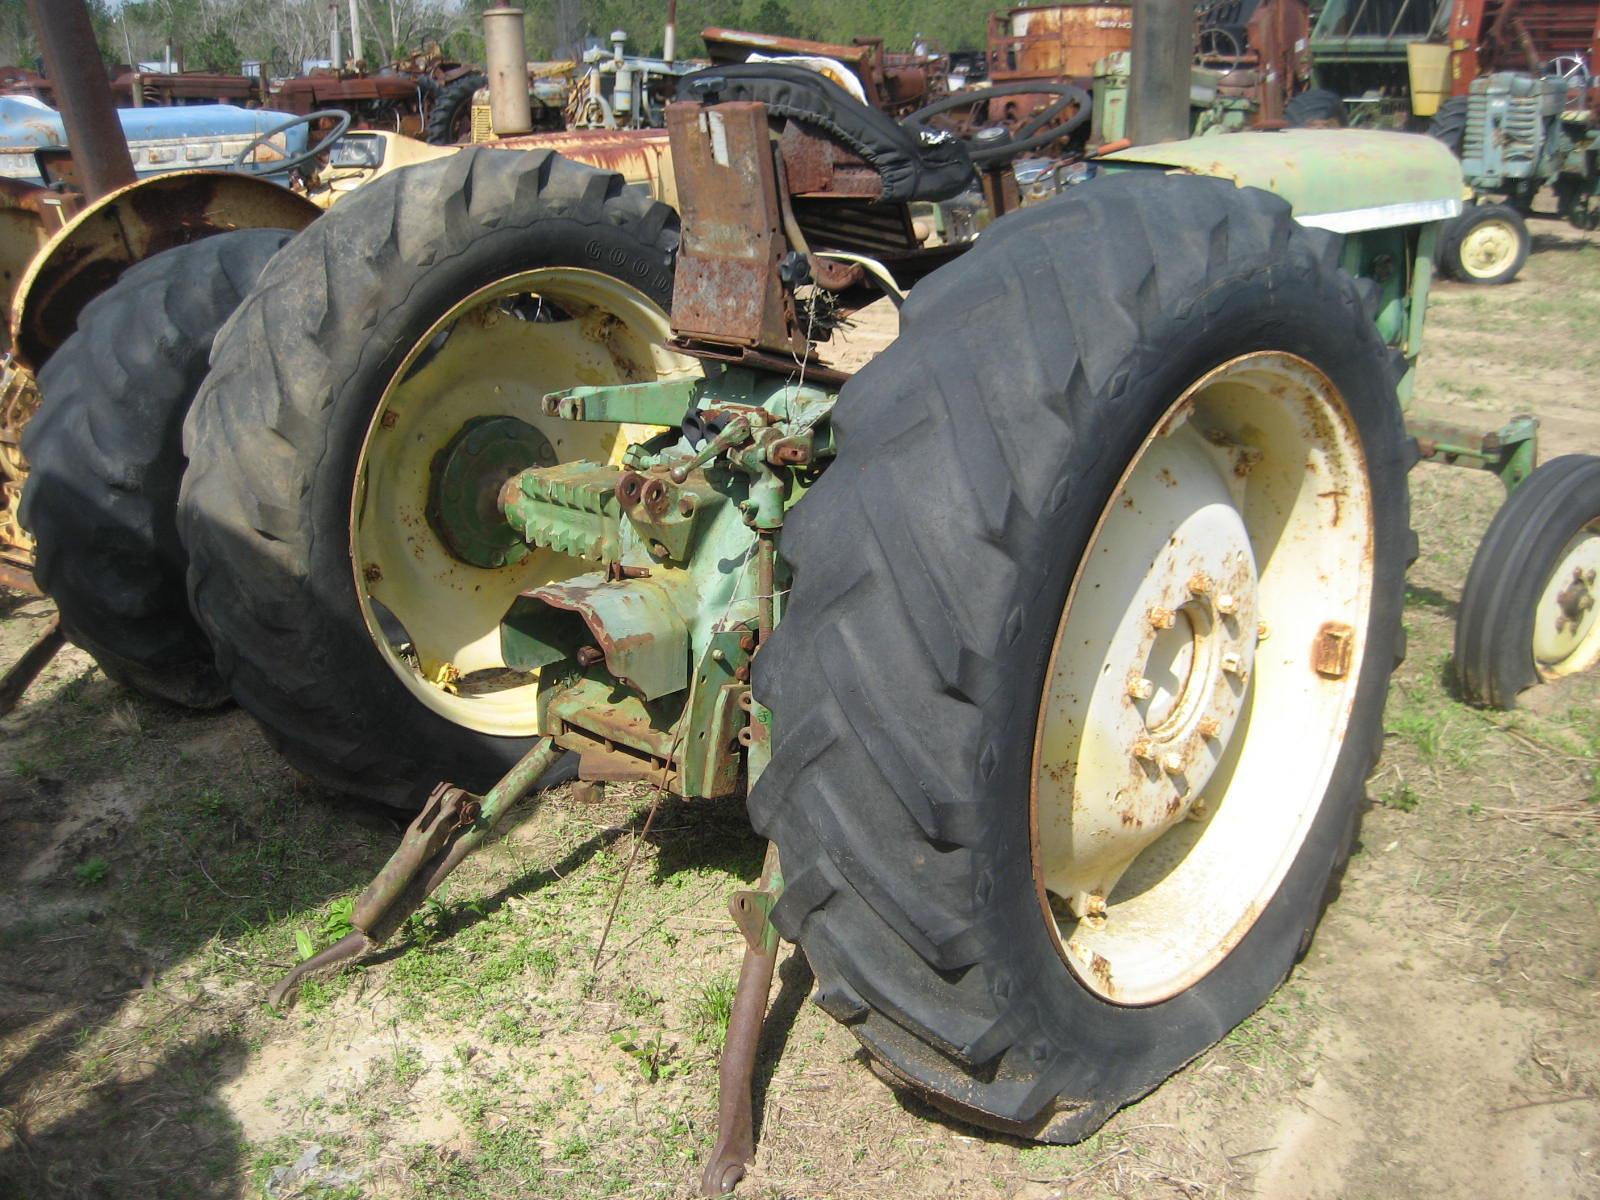 John Deere 1120 Tractor, s/n 141739: Diesel Eng., 2906 hrs